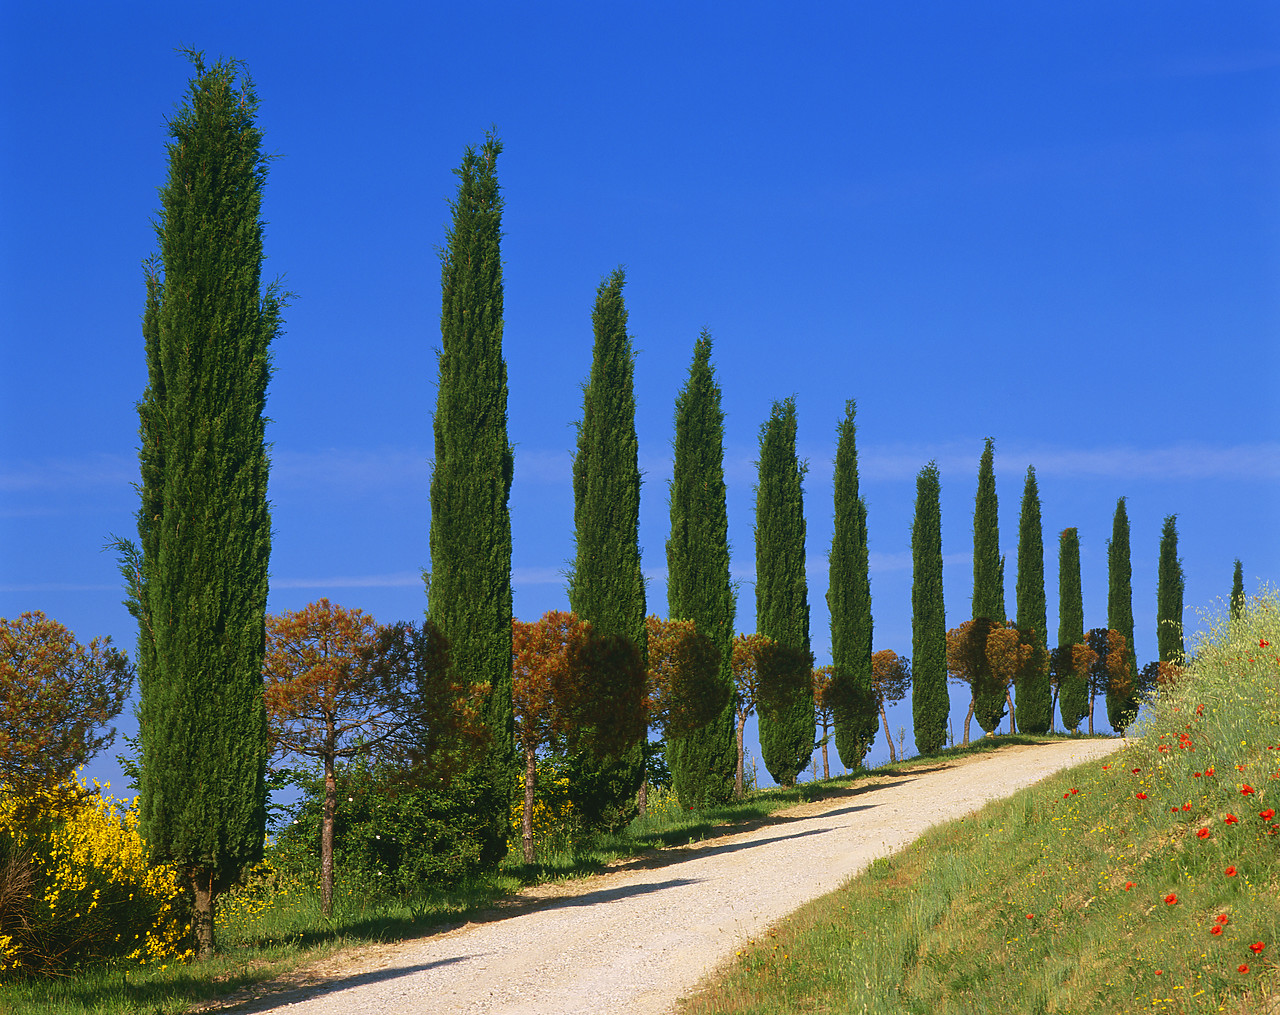 #020126-1 - Cypress Trees & Road, San Quirico, Tuscany, Italy